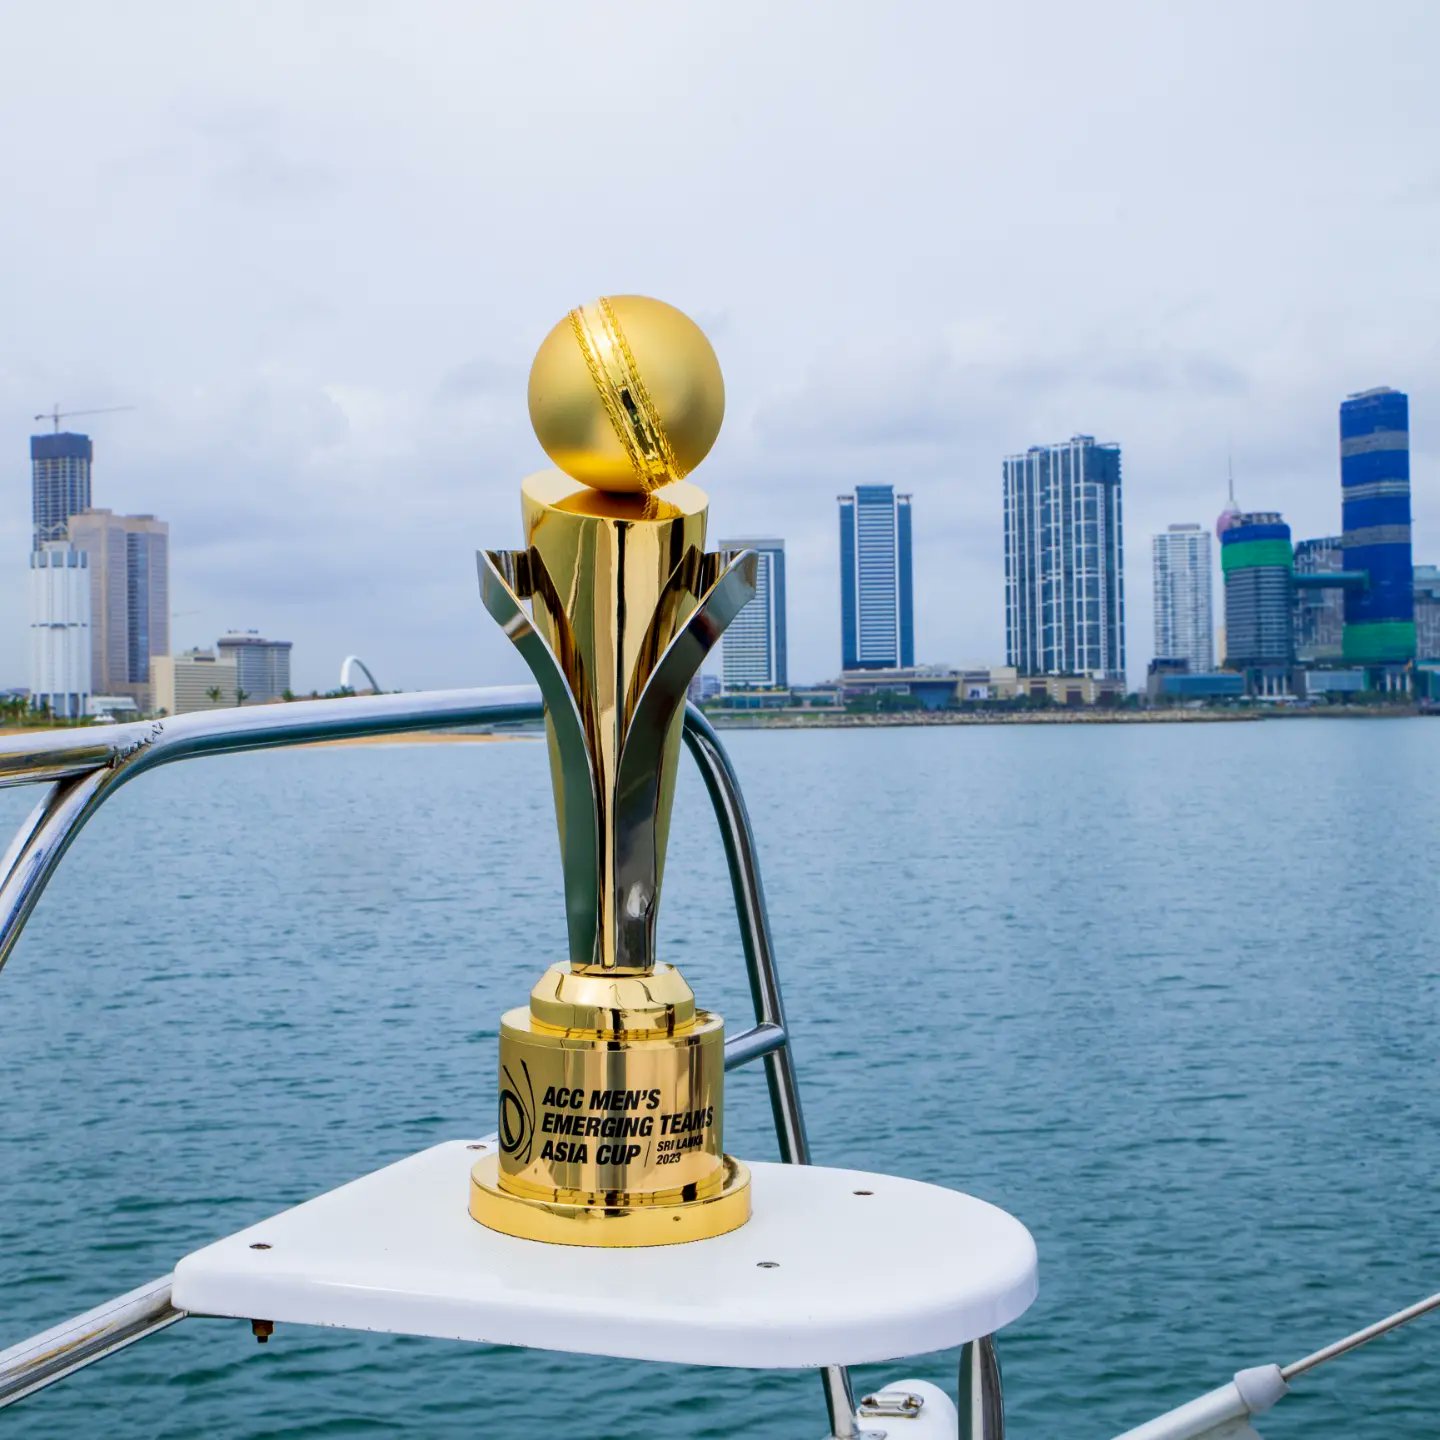 ACC Men’s Emerging Teams Asia Cup trophy begins